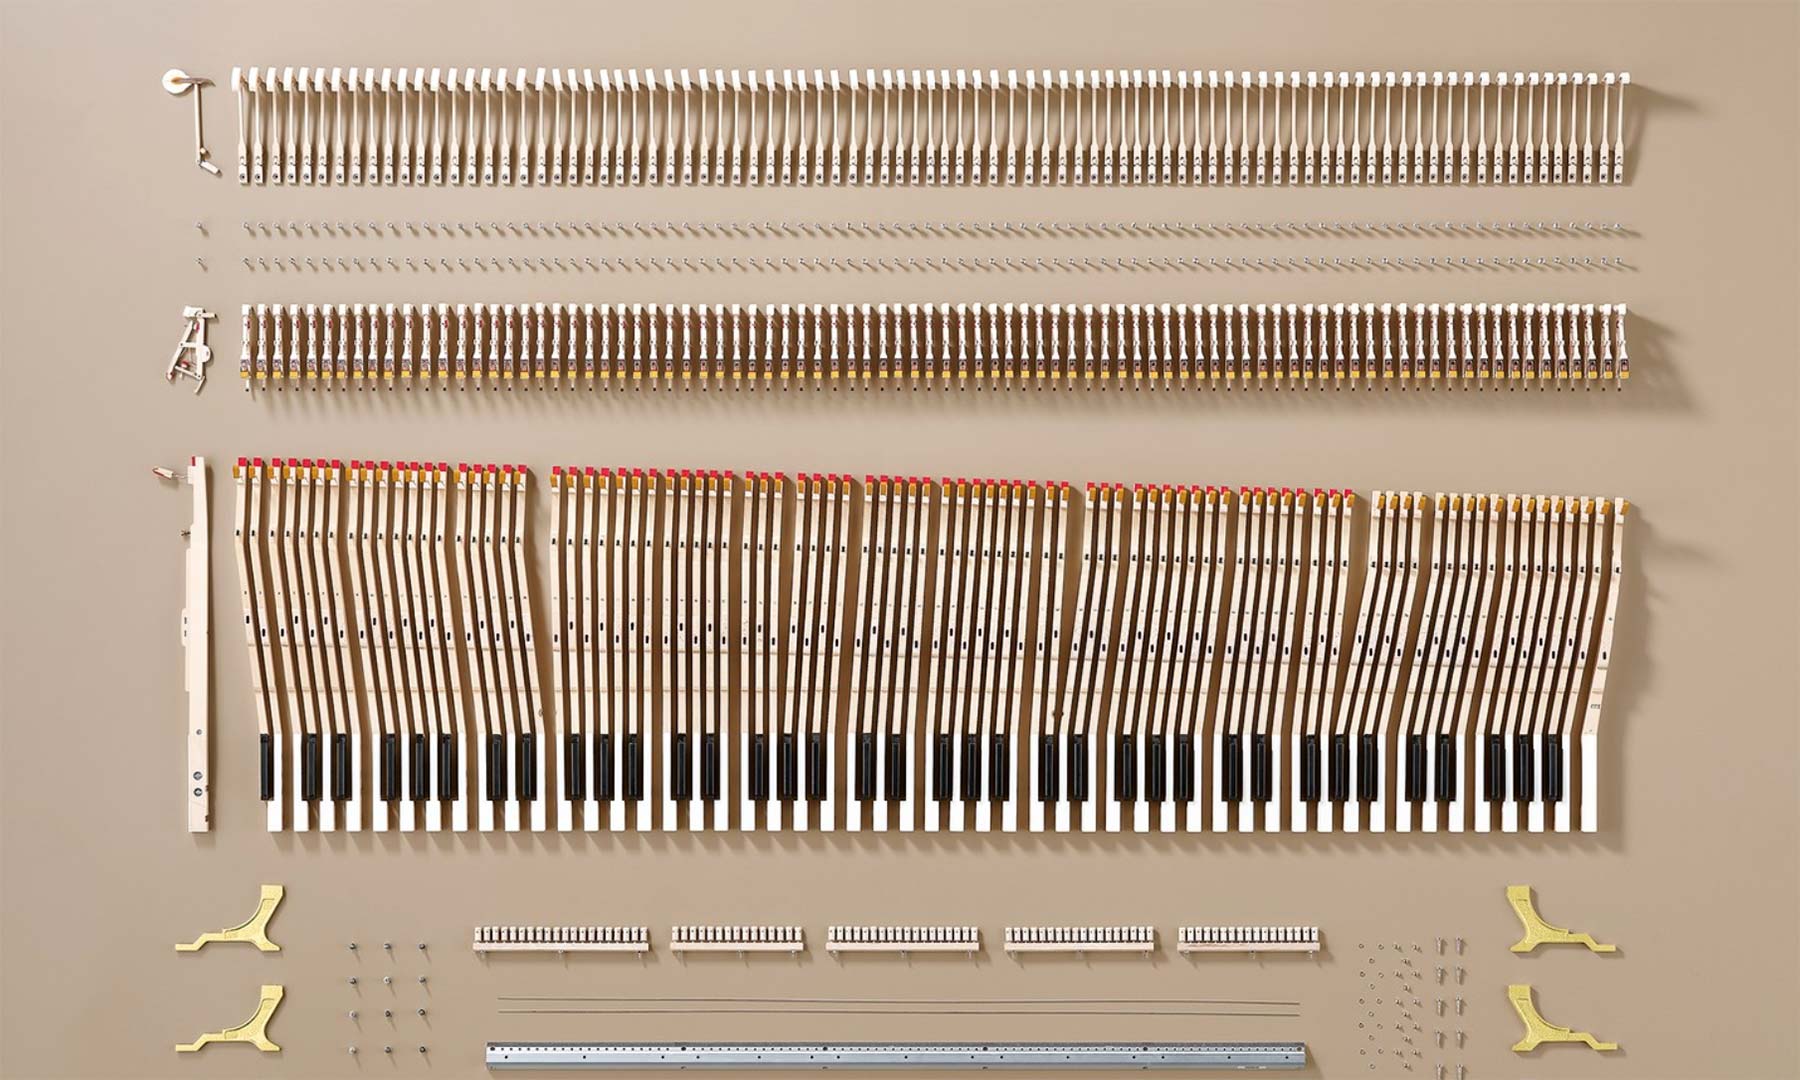 Yamaha-Klavier in Einzelteilen zerlegt angeordnet Yamaha-klavier-einzelteile-geordnet 